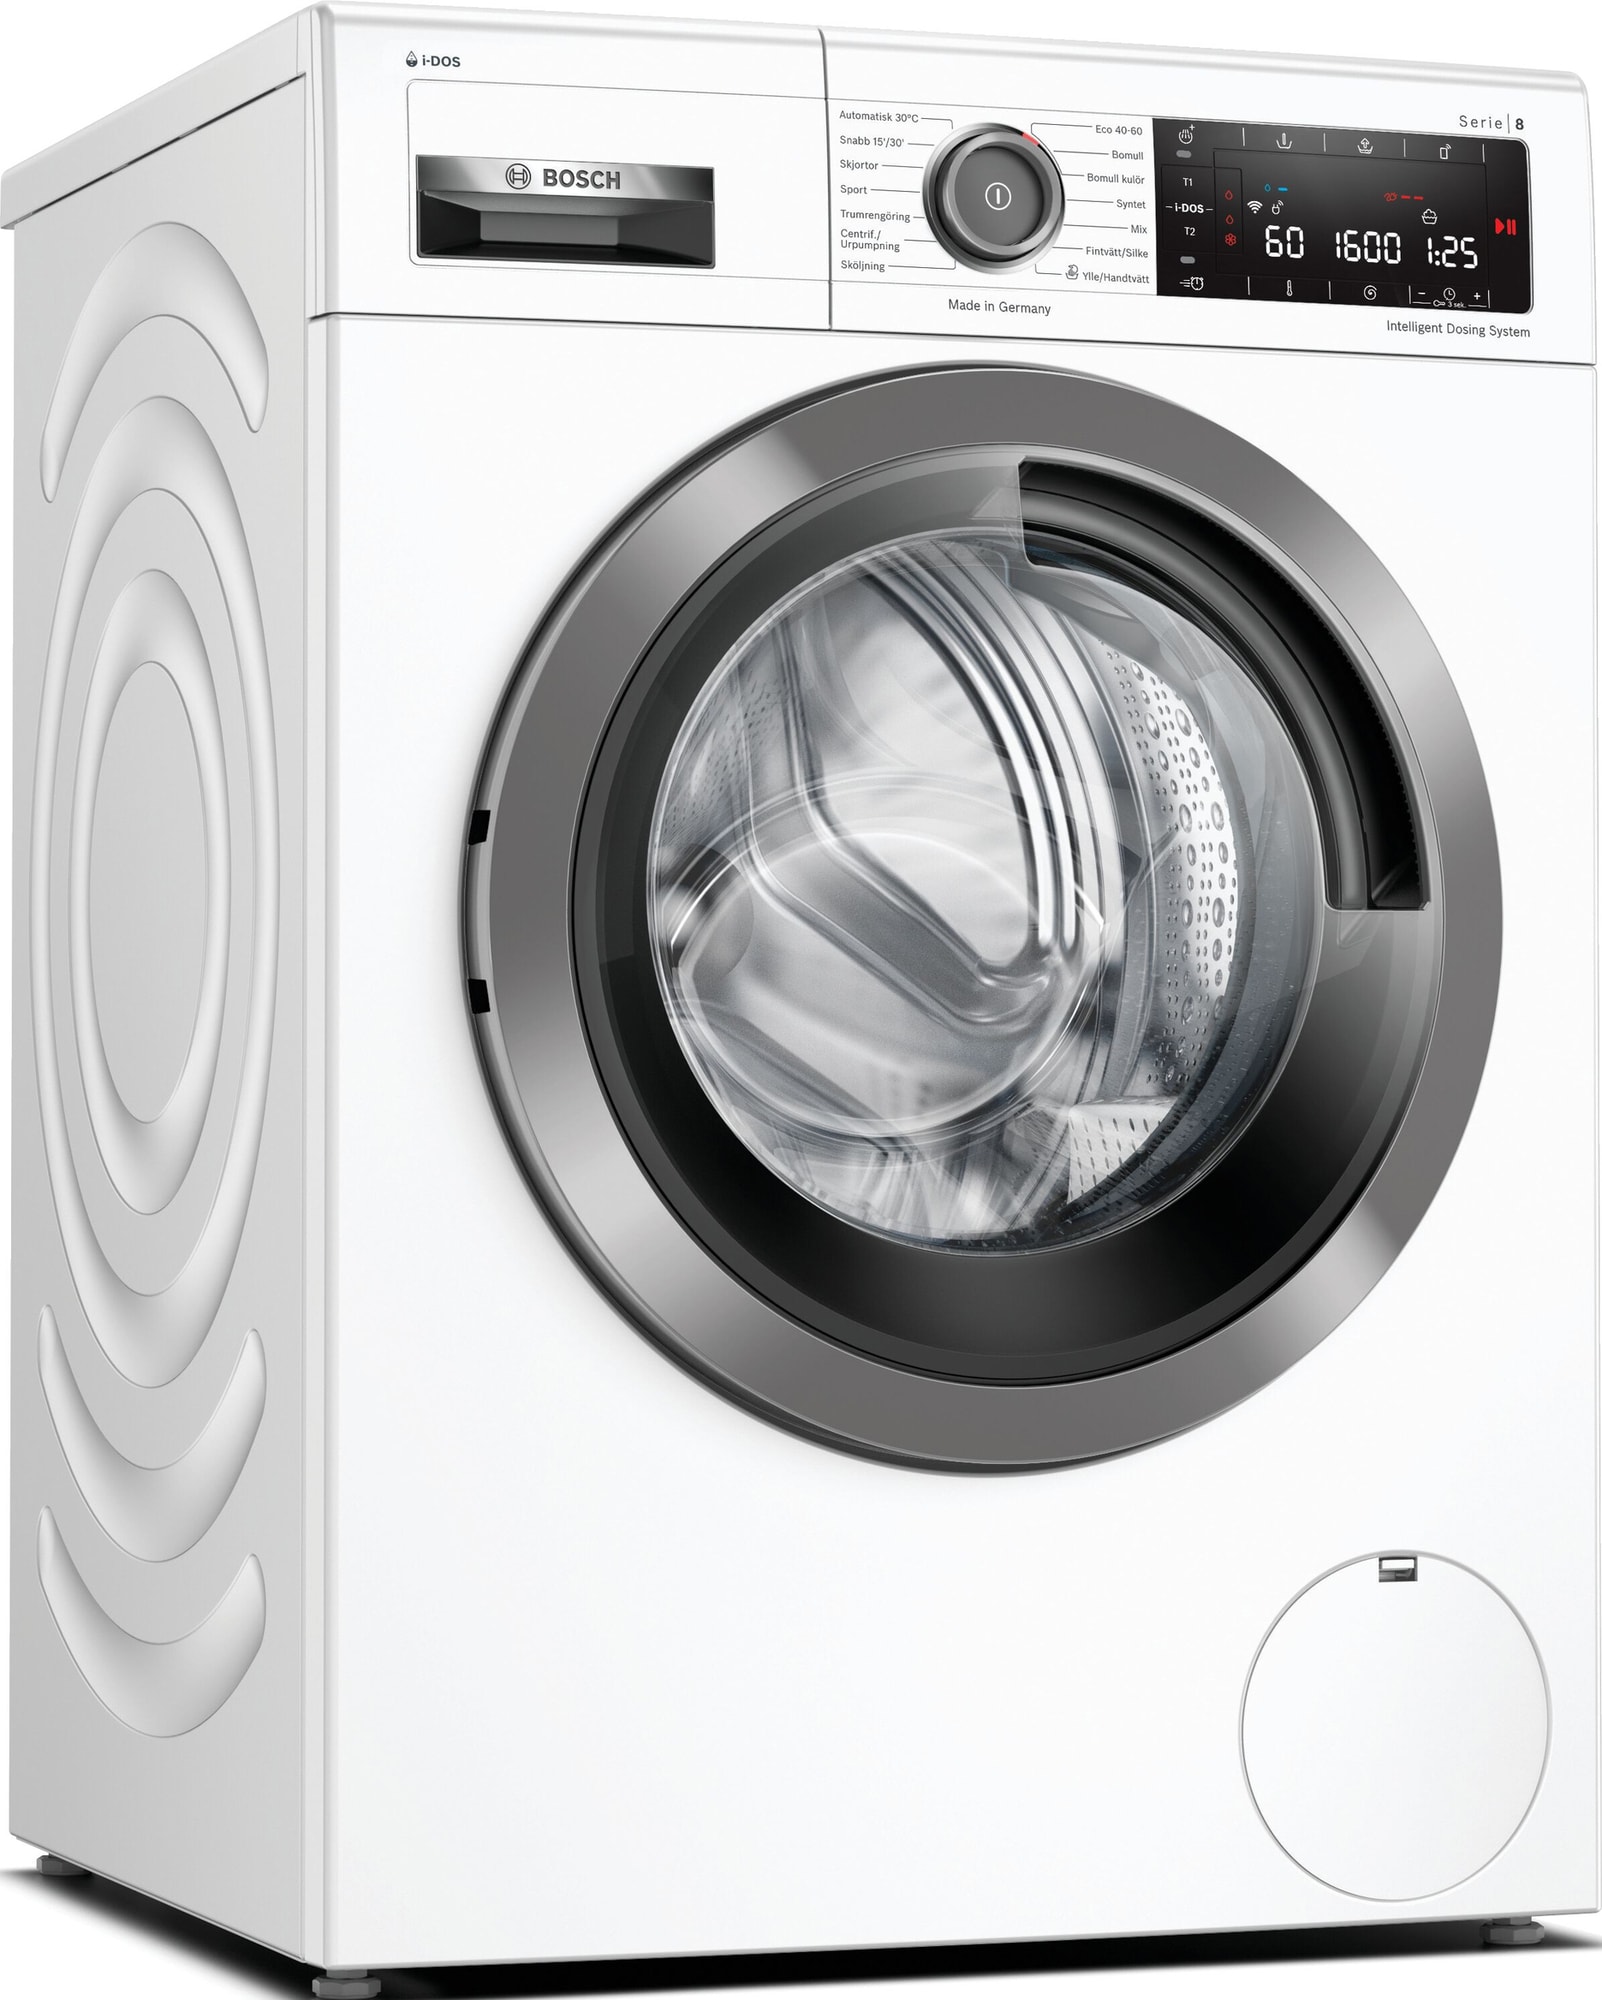 Bedste vaskemaskiner i test og pris – Tit billige tilbud - 2022